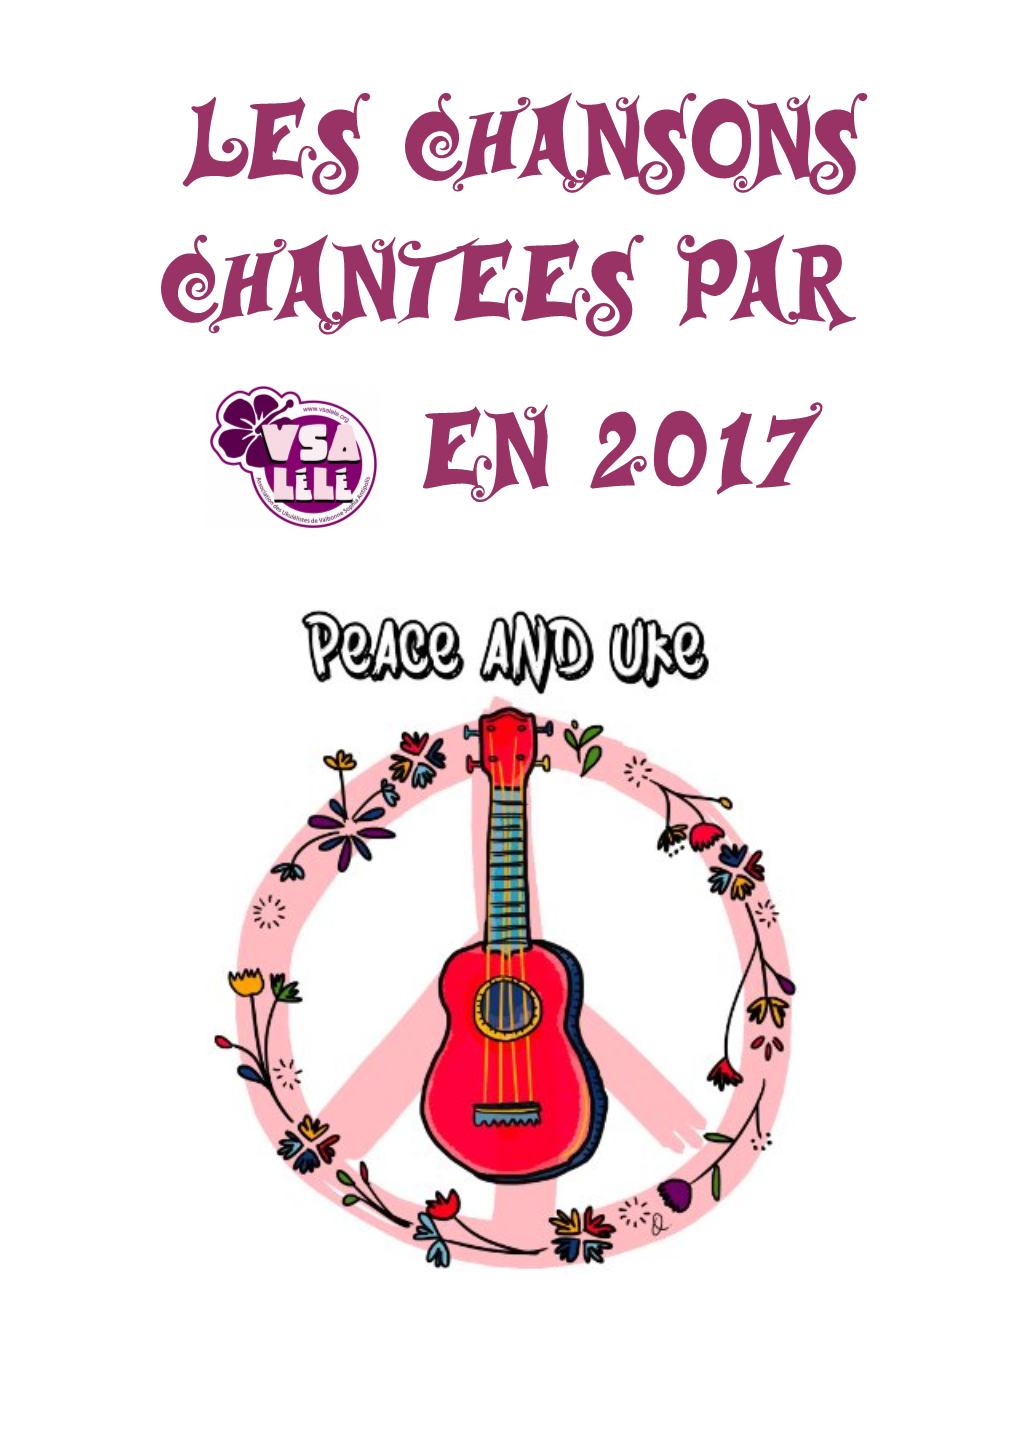 Les Chansons Chantees Par En 2017